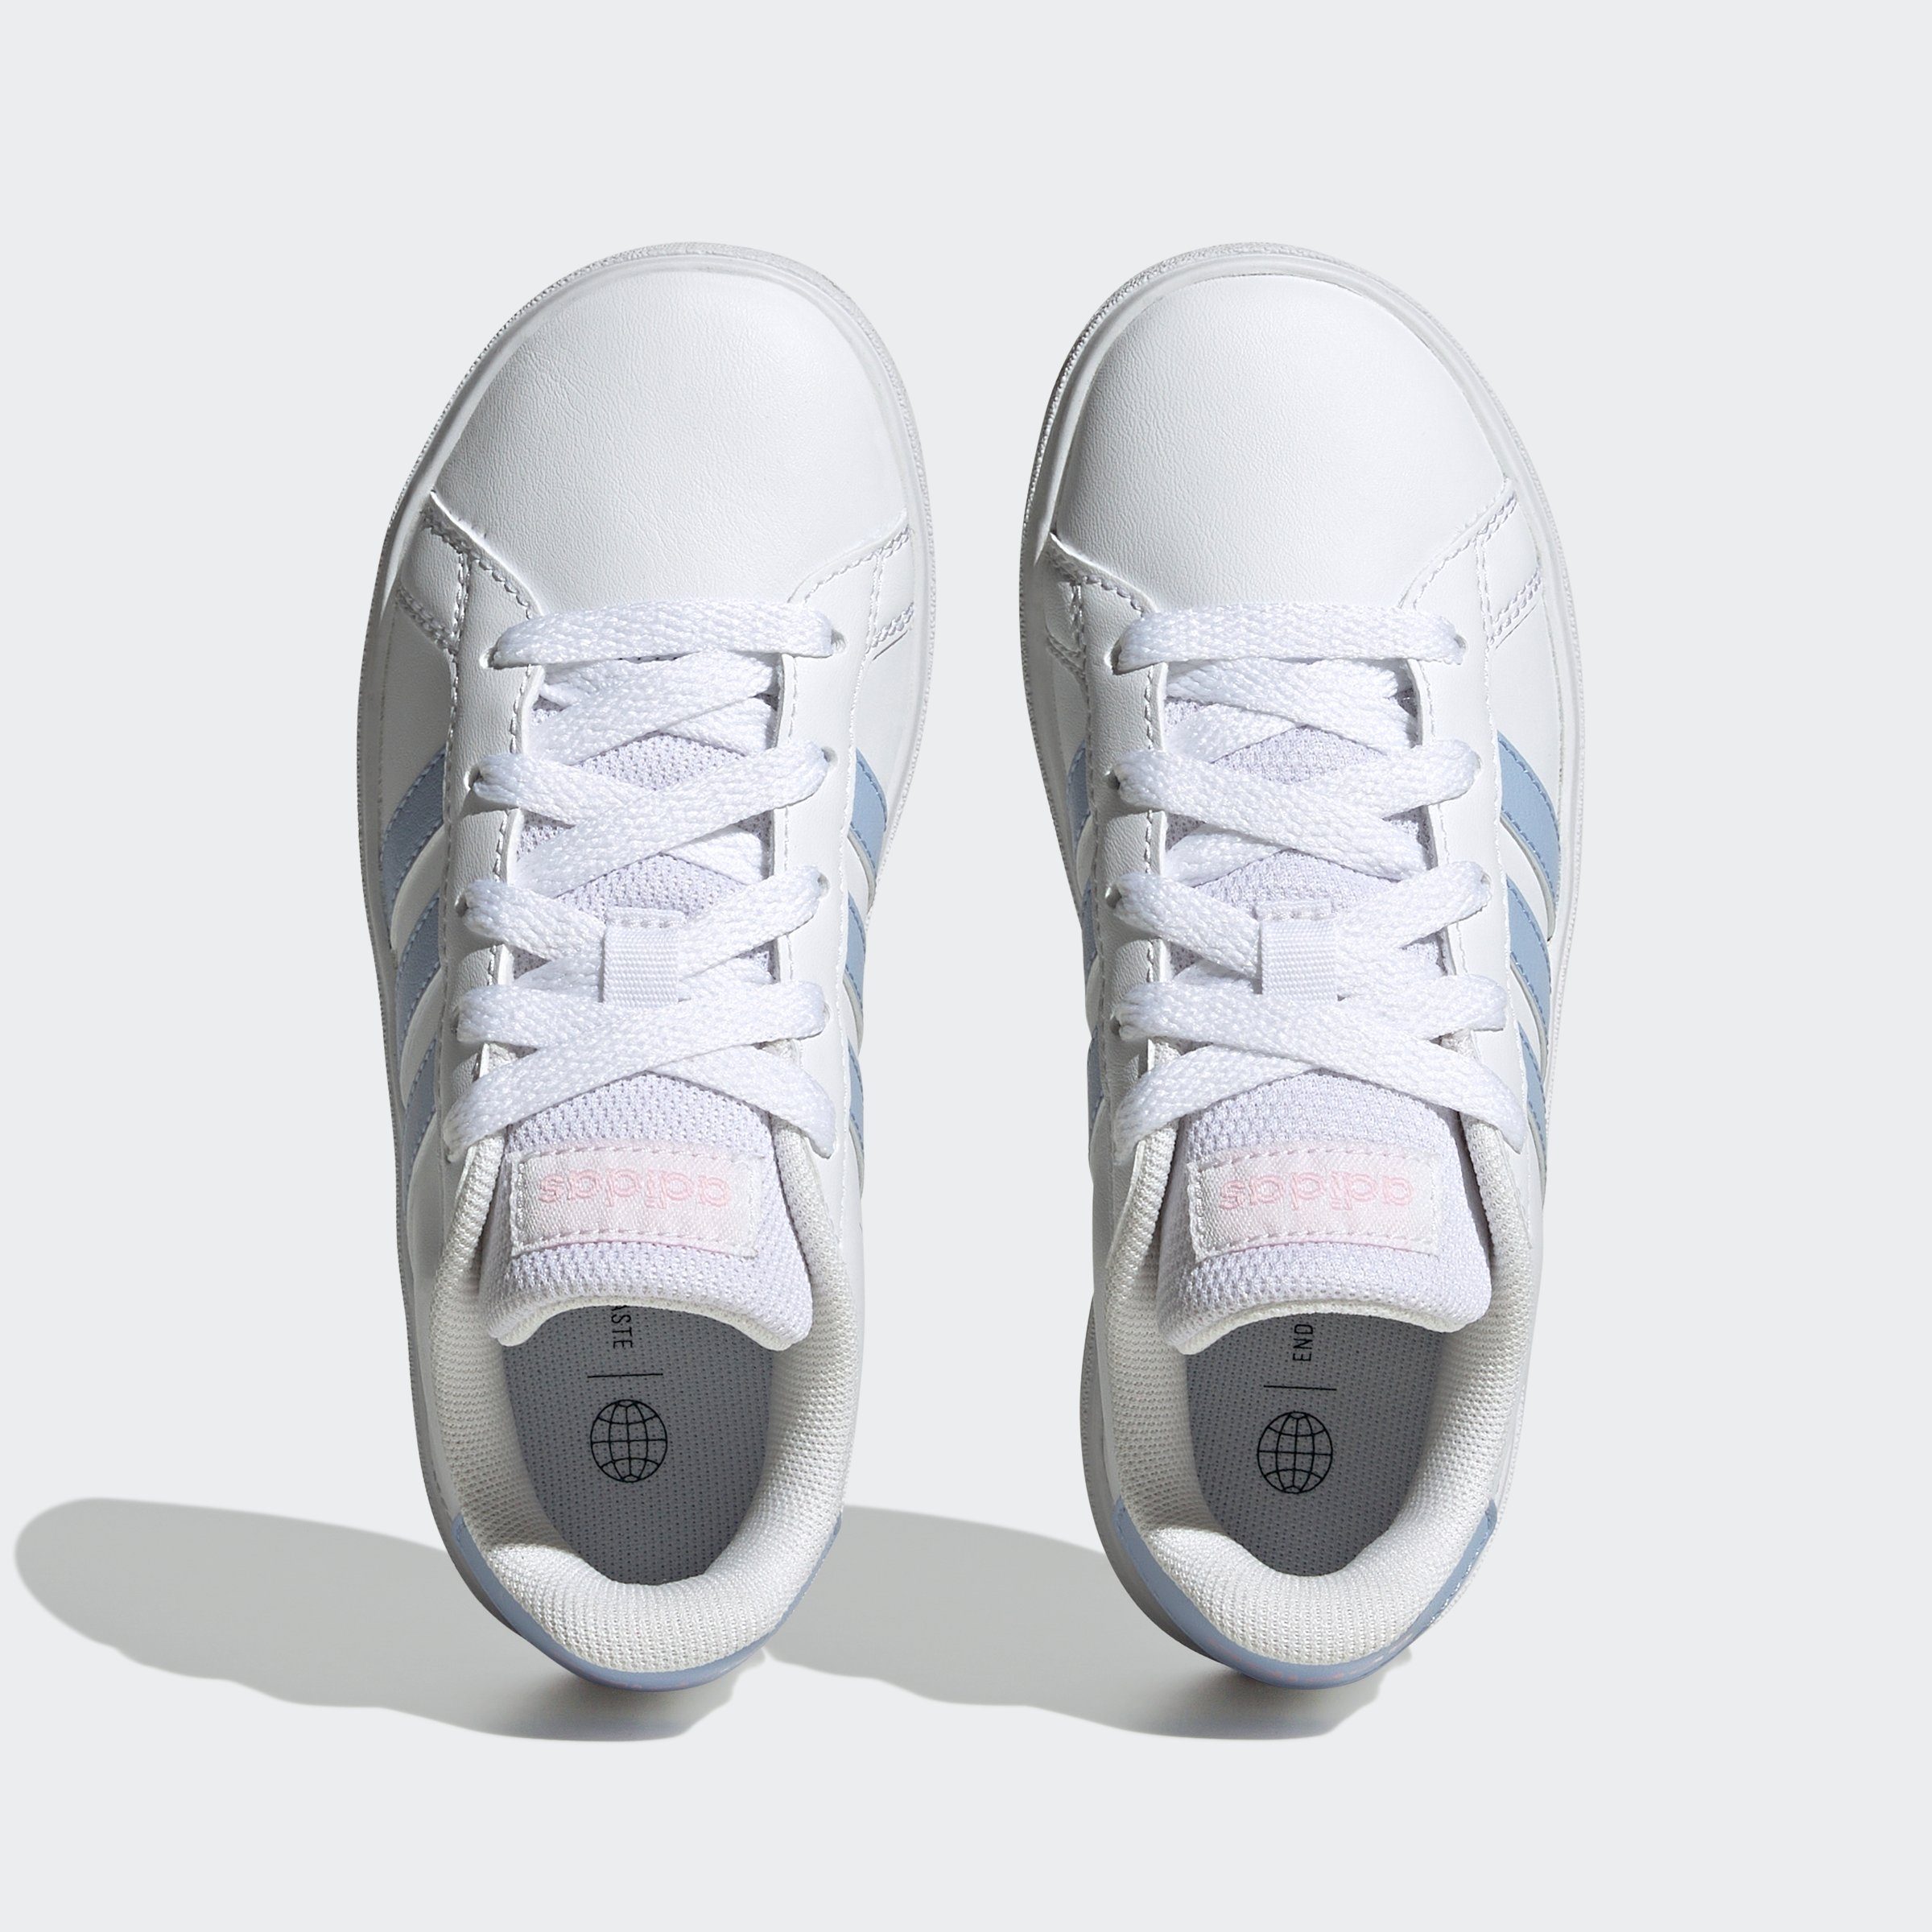 adidas / Cloud des LIFESTYLE Superstar Blue White LACE-UP adidas den Dawn / Design Pink Clear Spuren Sneaker auf GRAND COURT TENNIS Sportswear